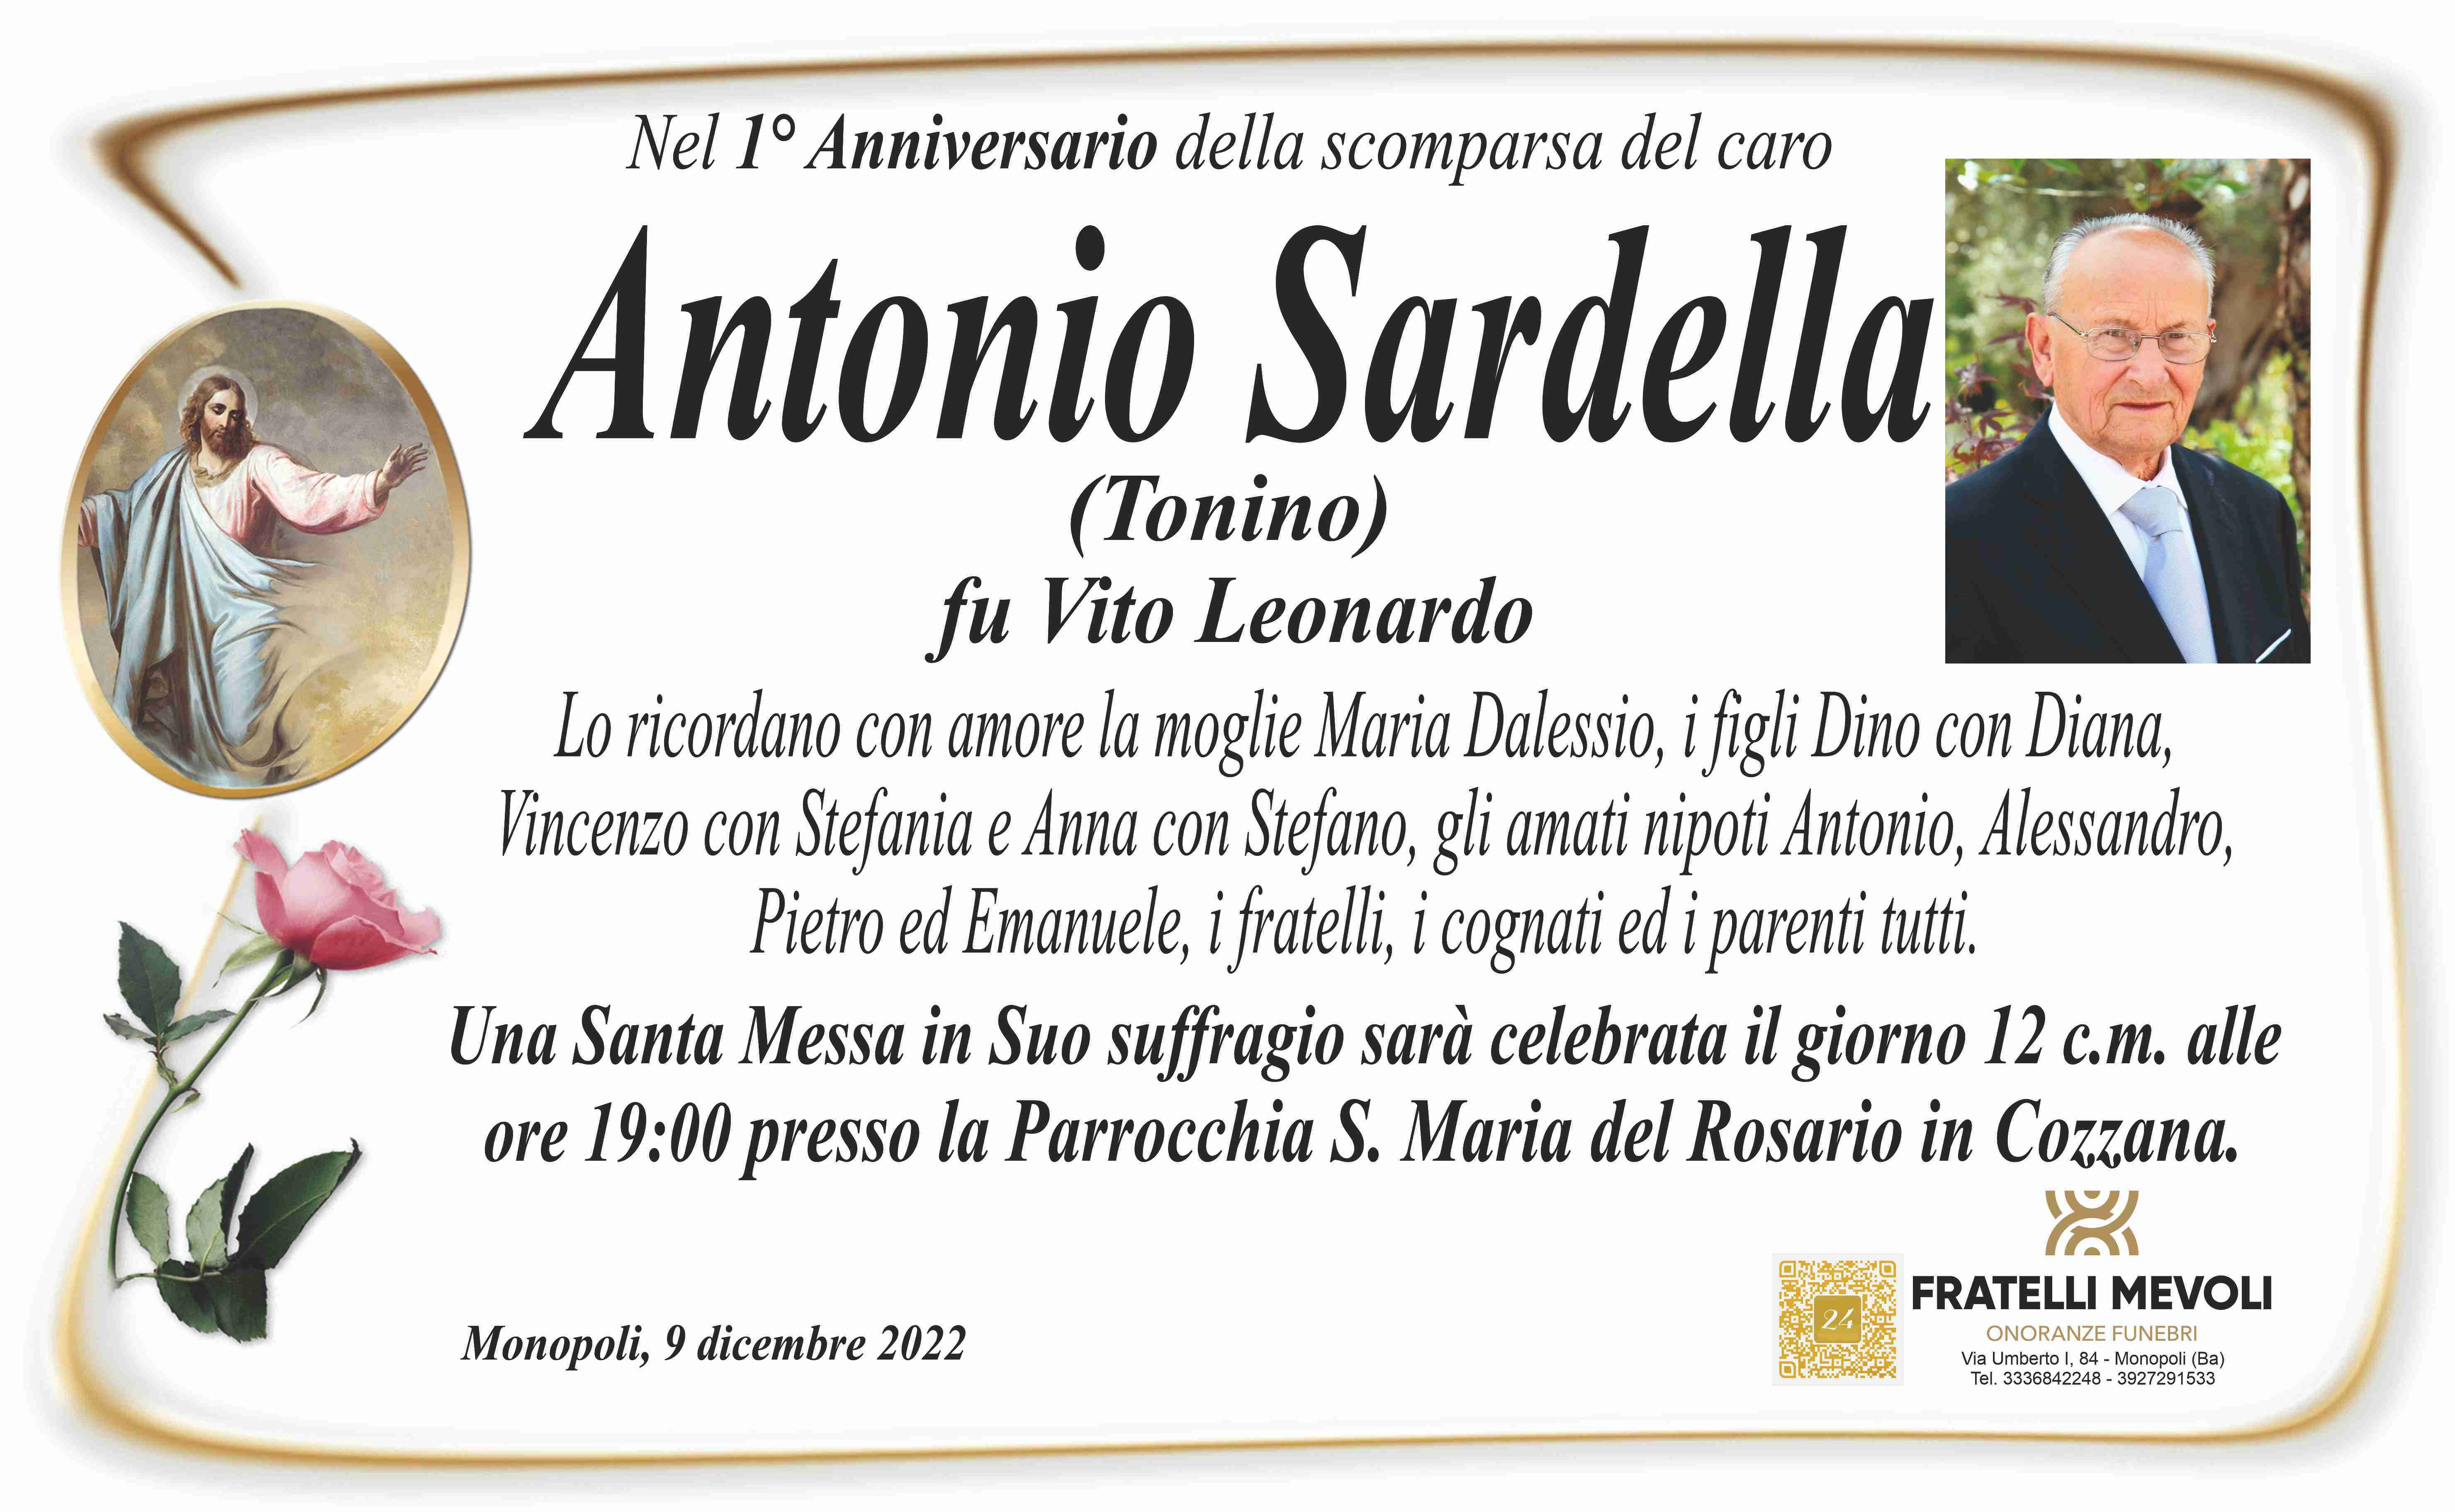 Antonio Sardella